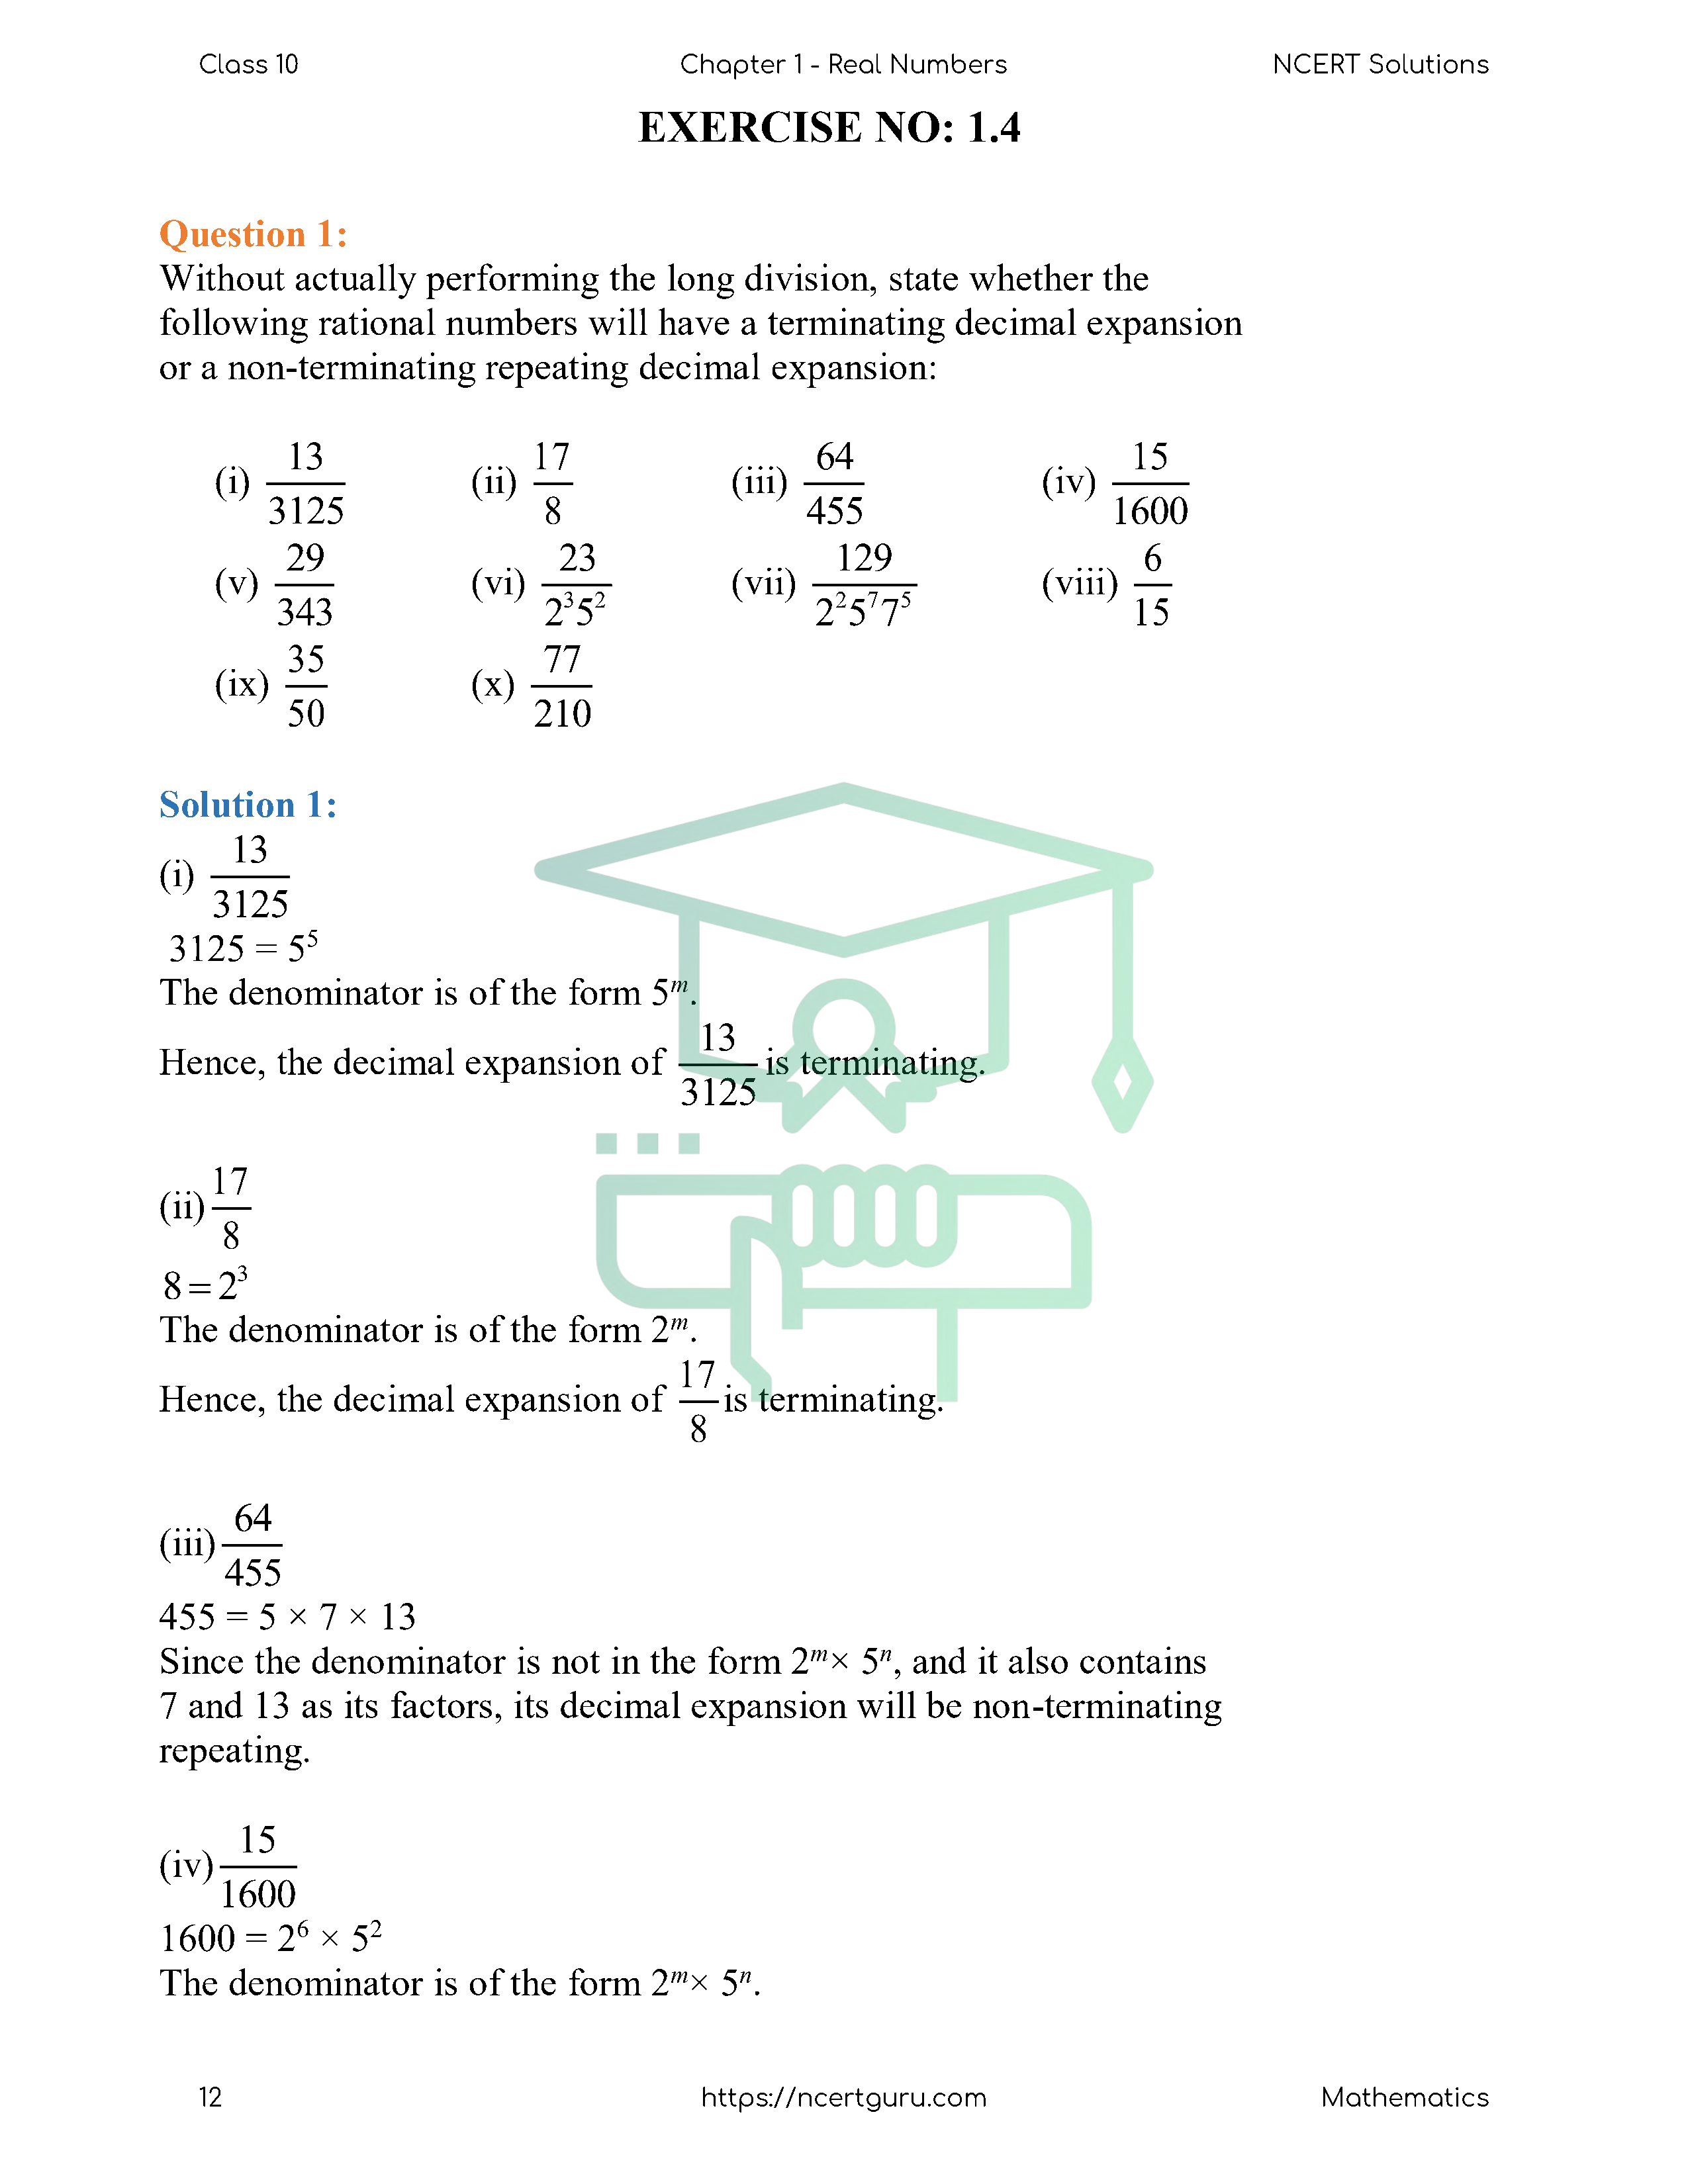 NCERT Solutions for Class 10 Maths Chapter 1